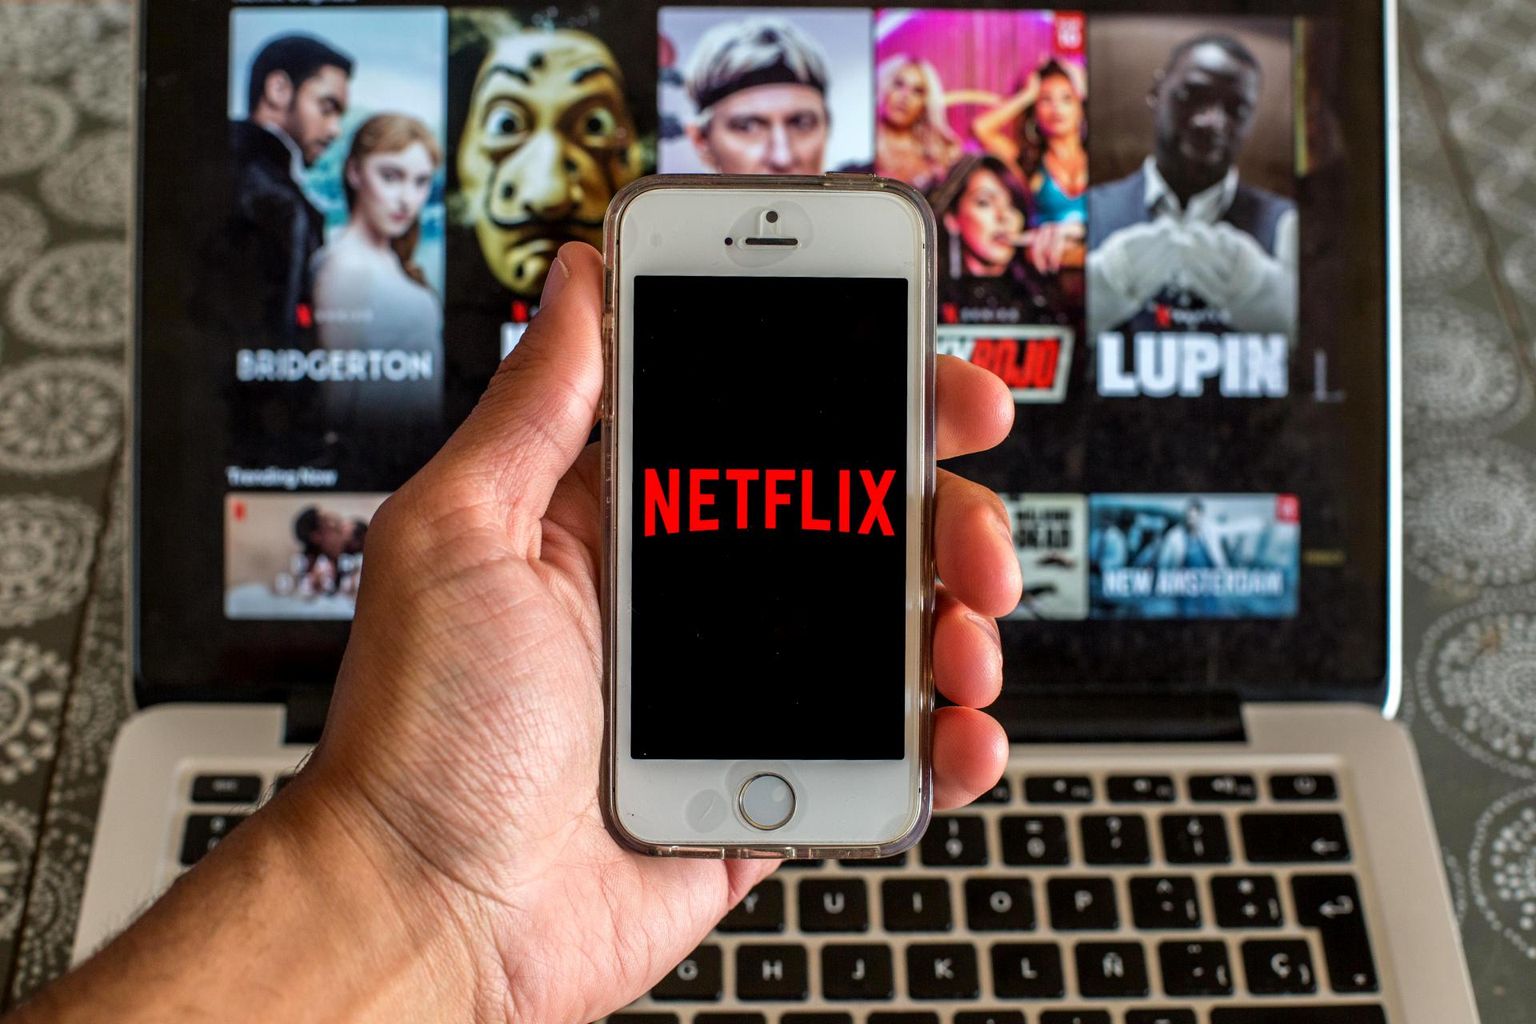 Digitaalseks sisuks või teenuseks on ka voogedastusteenused, näiteks Netflix.